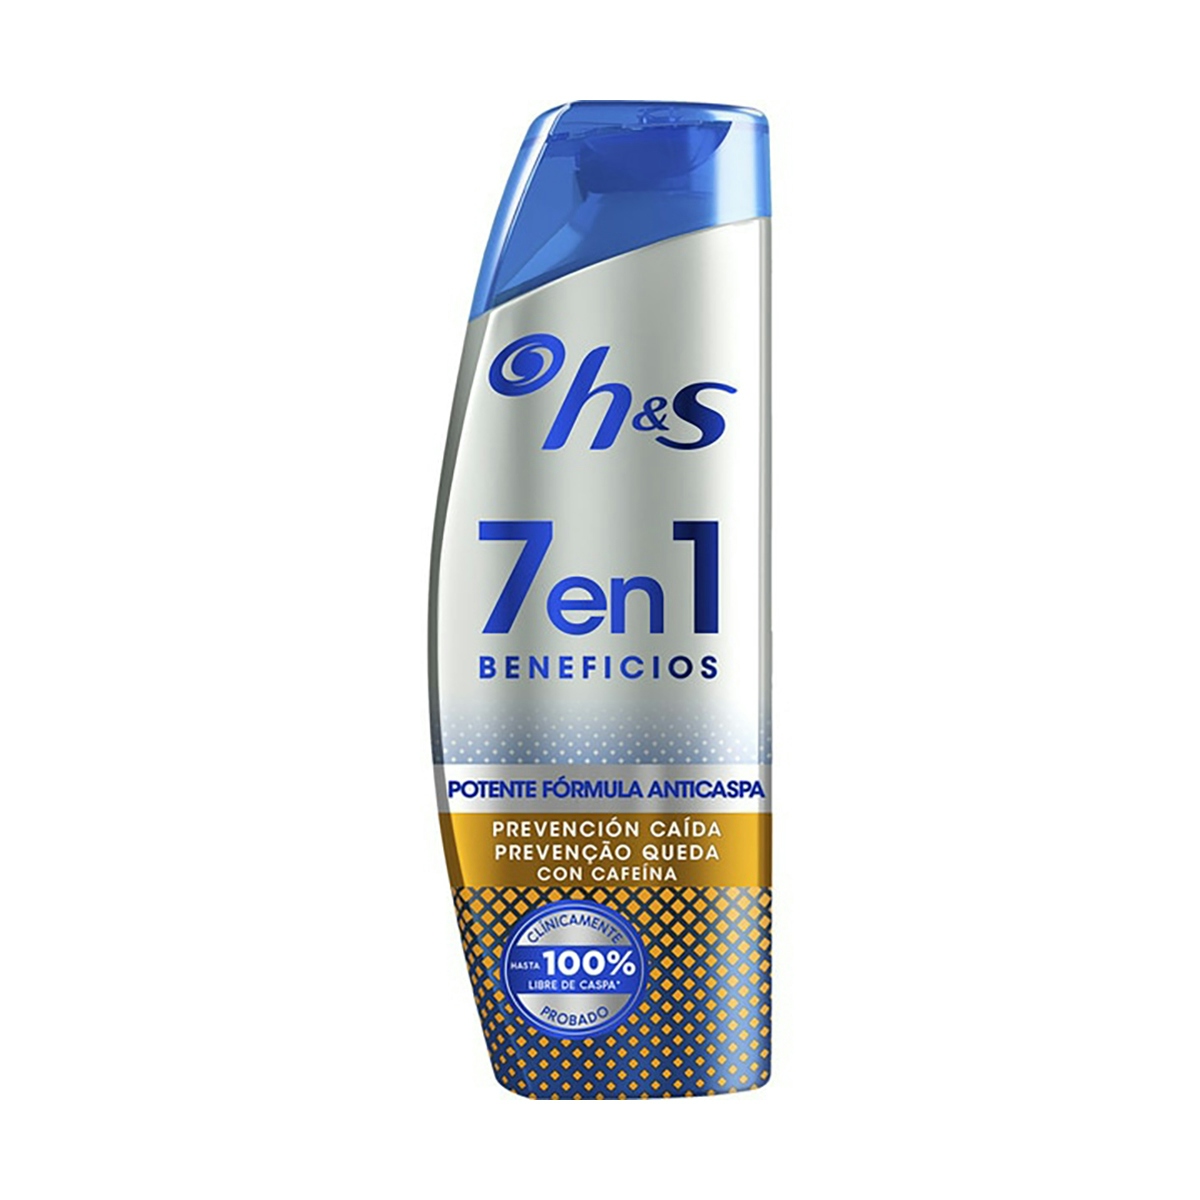 h&s 7en1 Eficaz champú anticaspa Prevención Caída, con cafeína, 300 ml